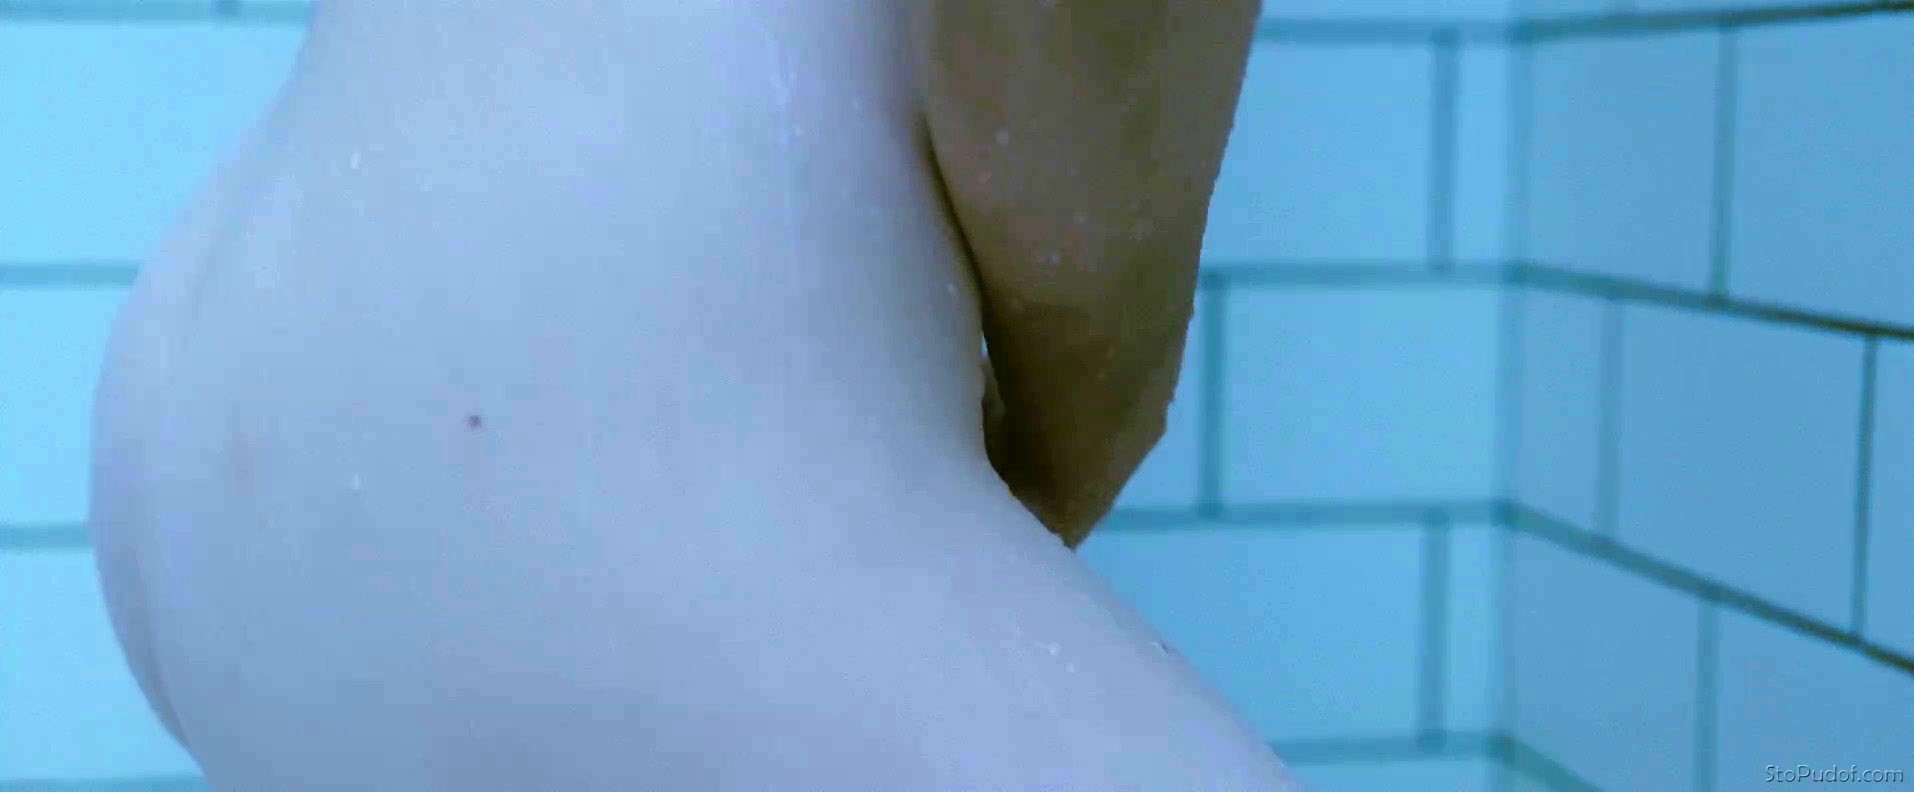 Mia Wasikowska butt naked - UkPhotoSafari